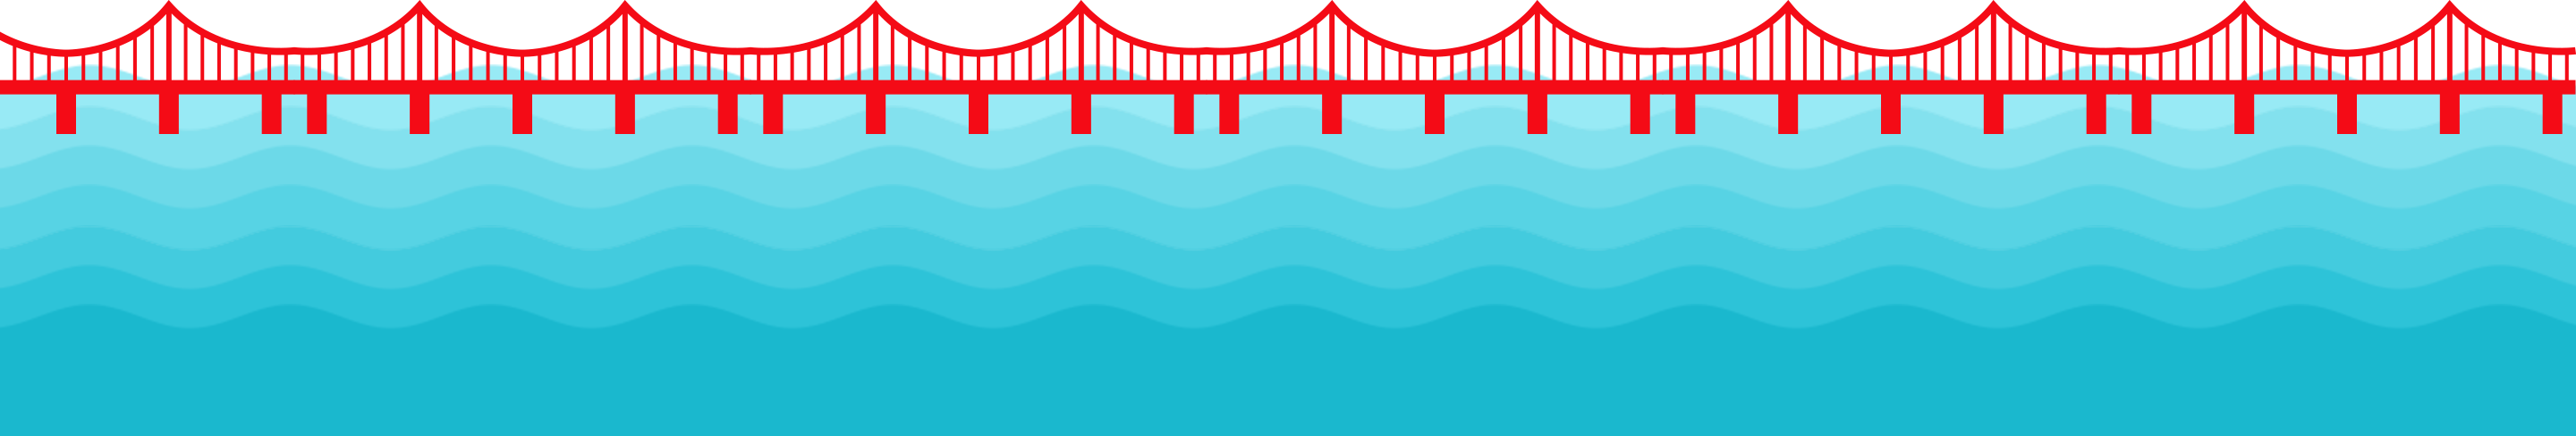 橋と海の背景画像